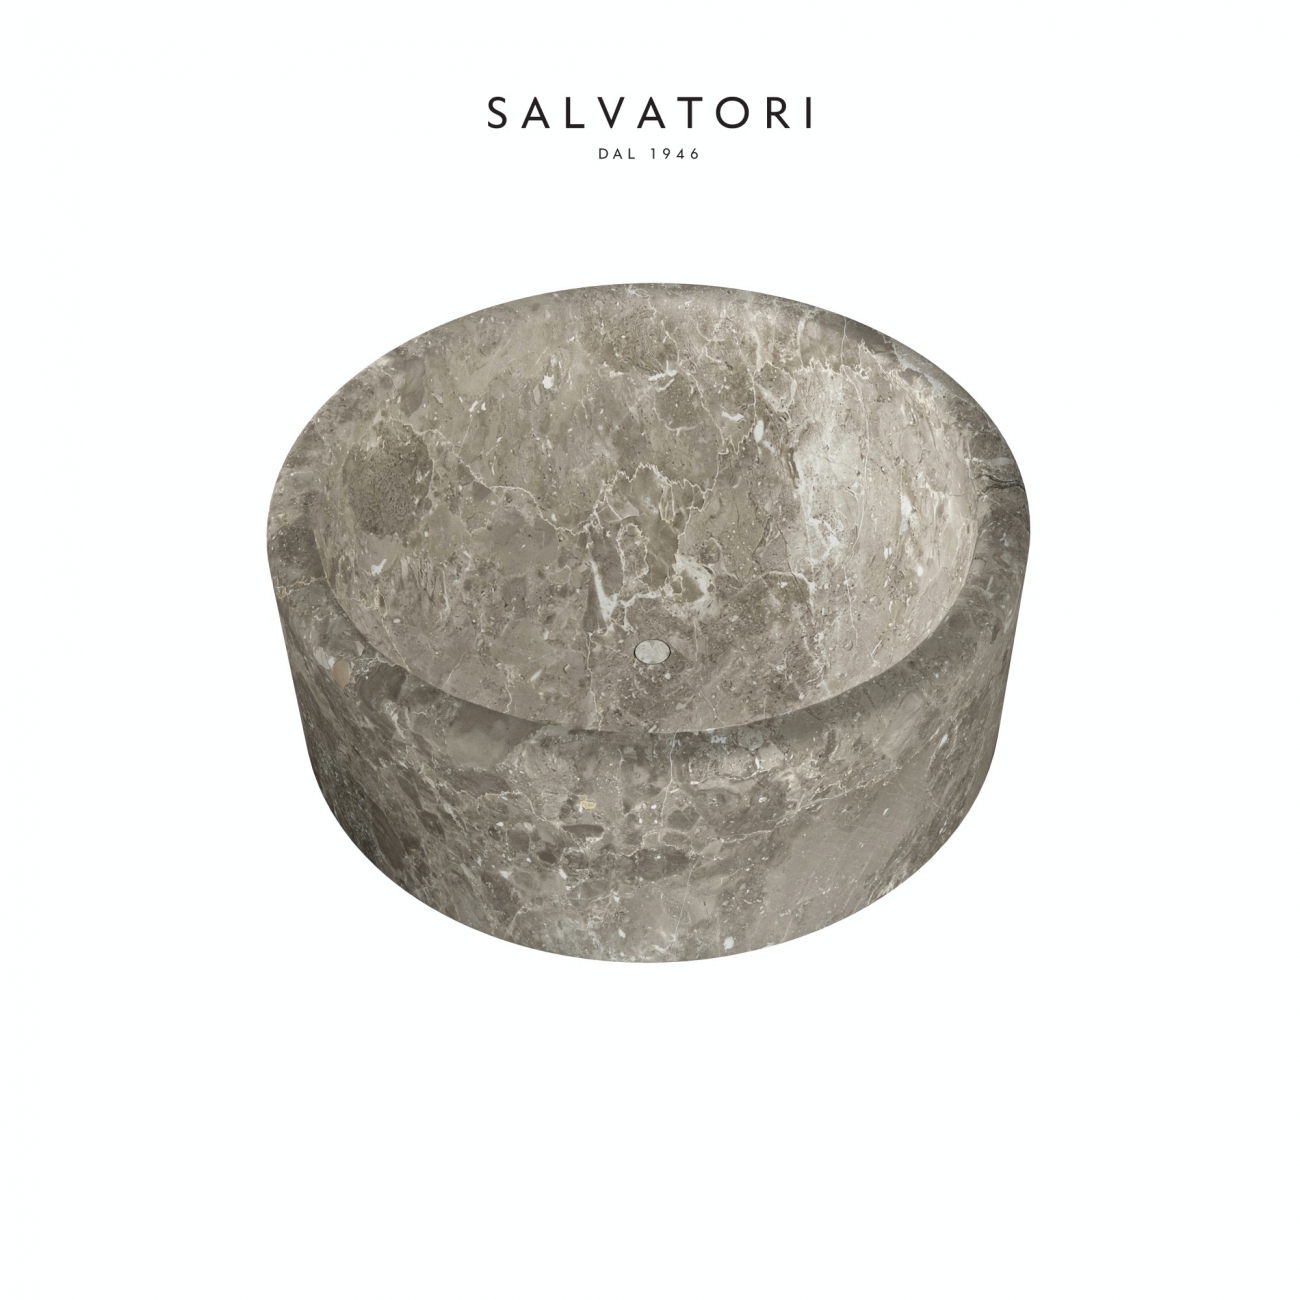 Salvatori Balnea Round Bathtub